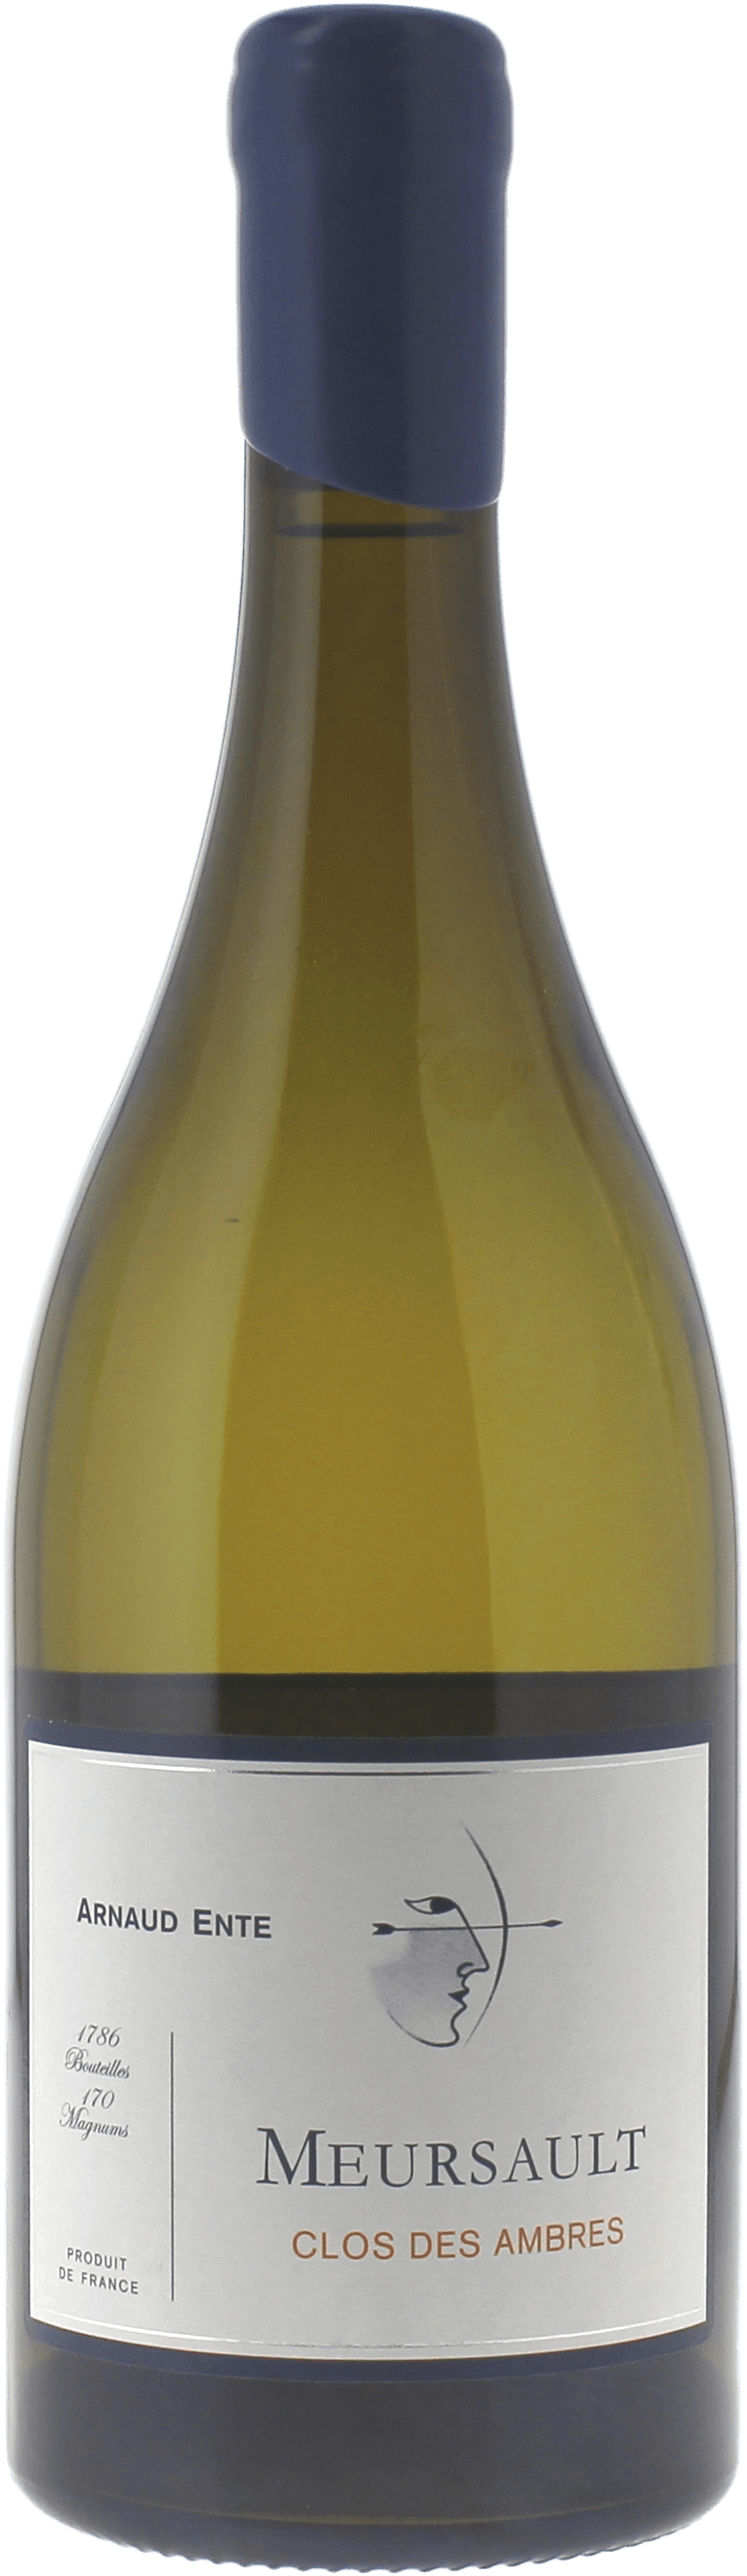 Meursault clos des ambres 2016 Domaine ENTE Arnaud, Bourgogne blanc